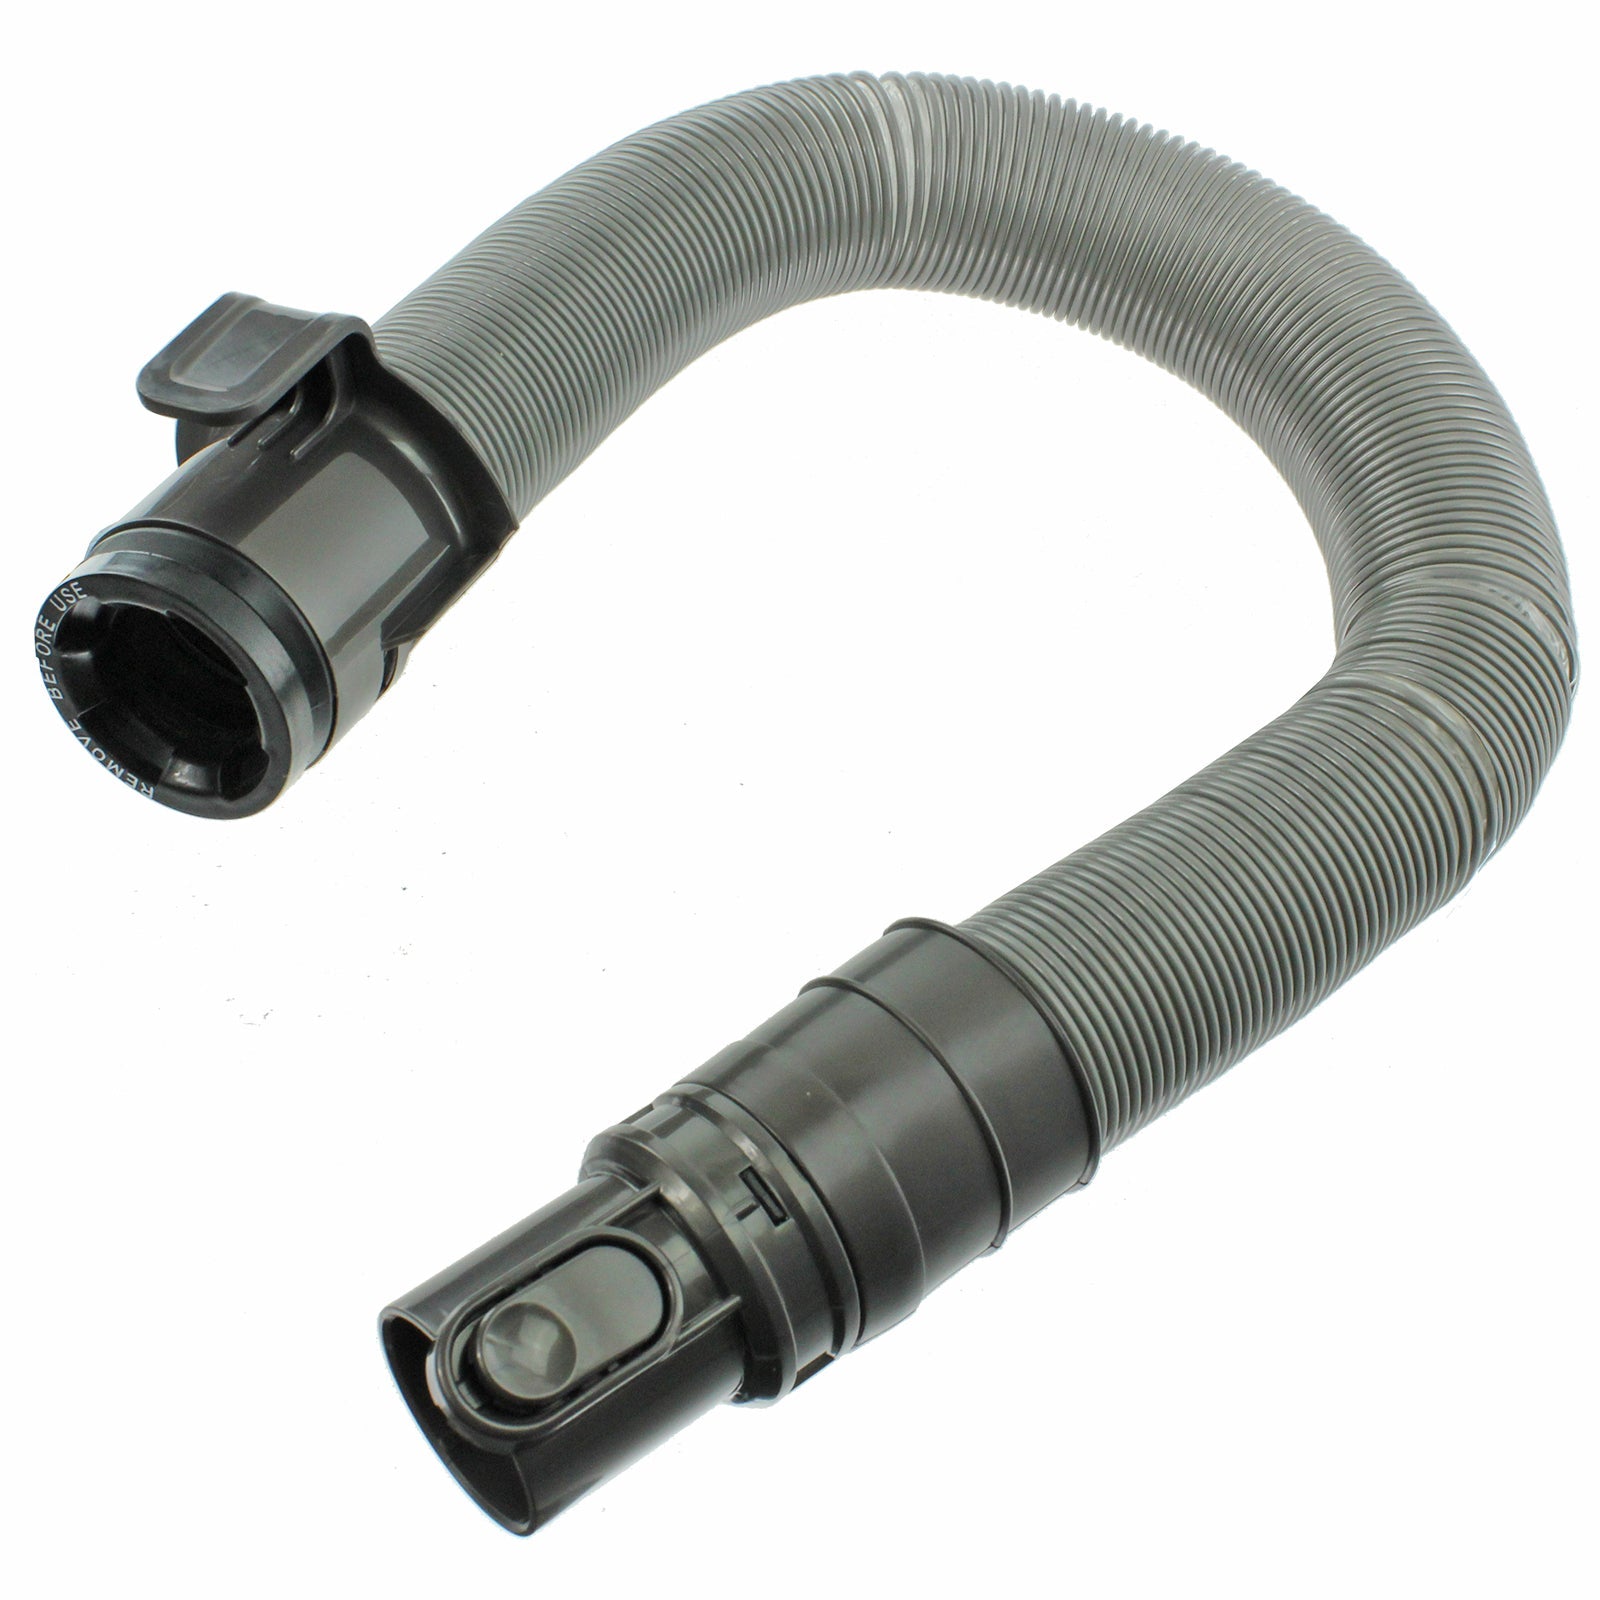 Brushroll, Hose & Filter Kit for DYSON DC25 DC25i Vacuum Cleaner Pre and Post motor Filter